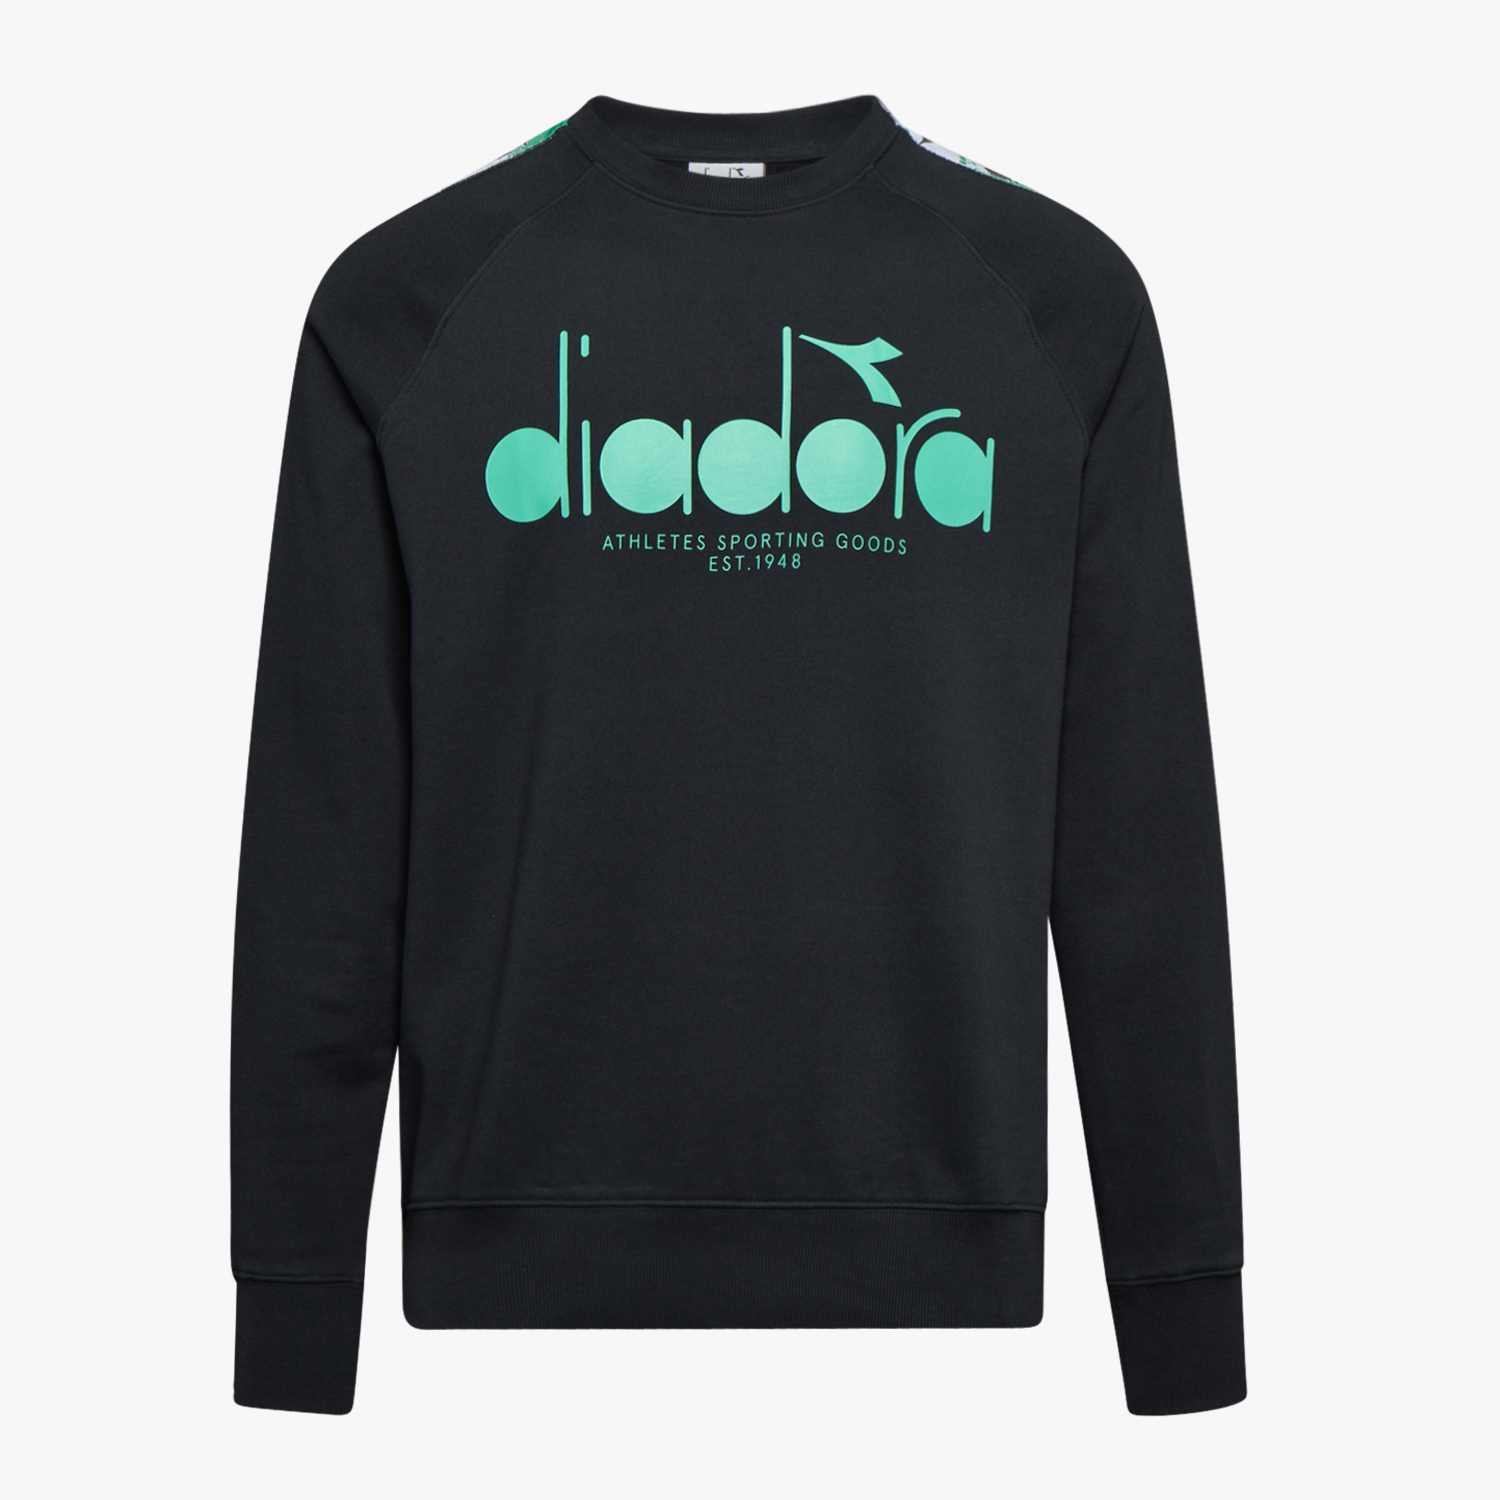 diadora sweater